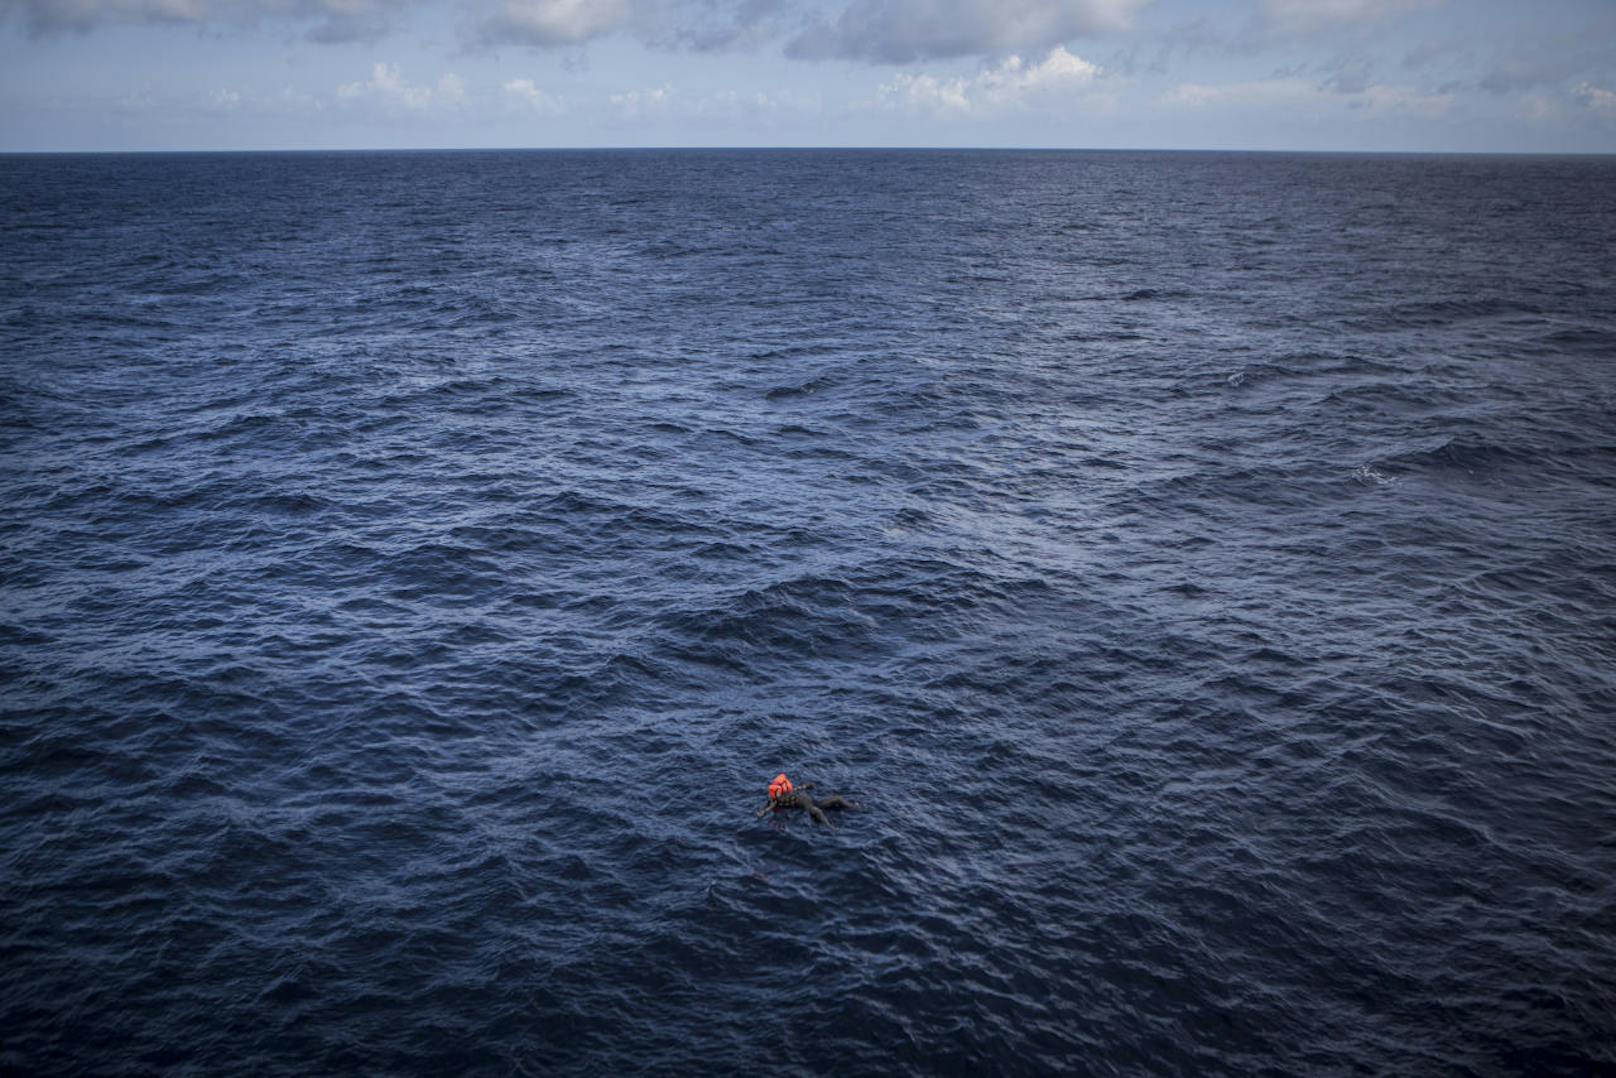 <b>Spot News ? Dritter Preis, Fotoserien</b>
Mathieu Willcocks, MOAS
Titel: Flucht über das Mittelmeer
Die Leiche eines Flüchtlings, der noch eine Rettungsweste trägt, treibt im Mittelmeer.
